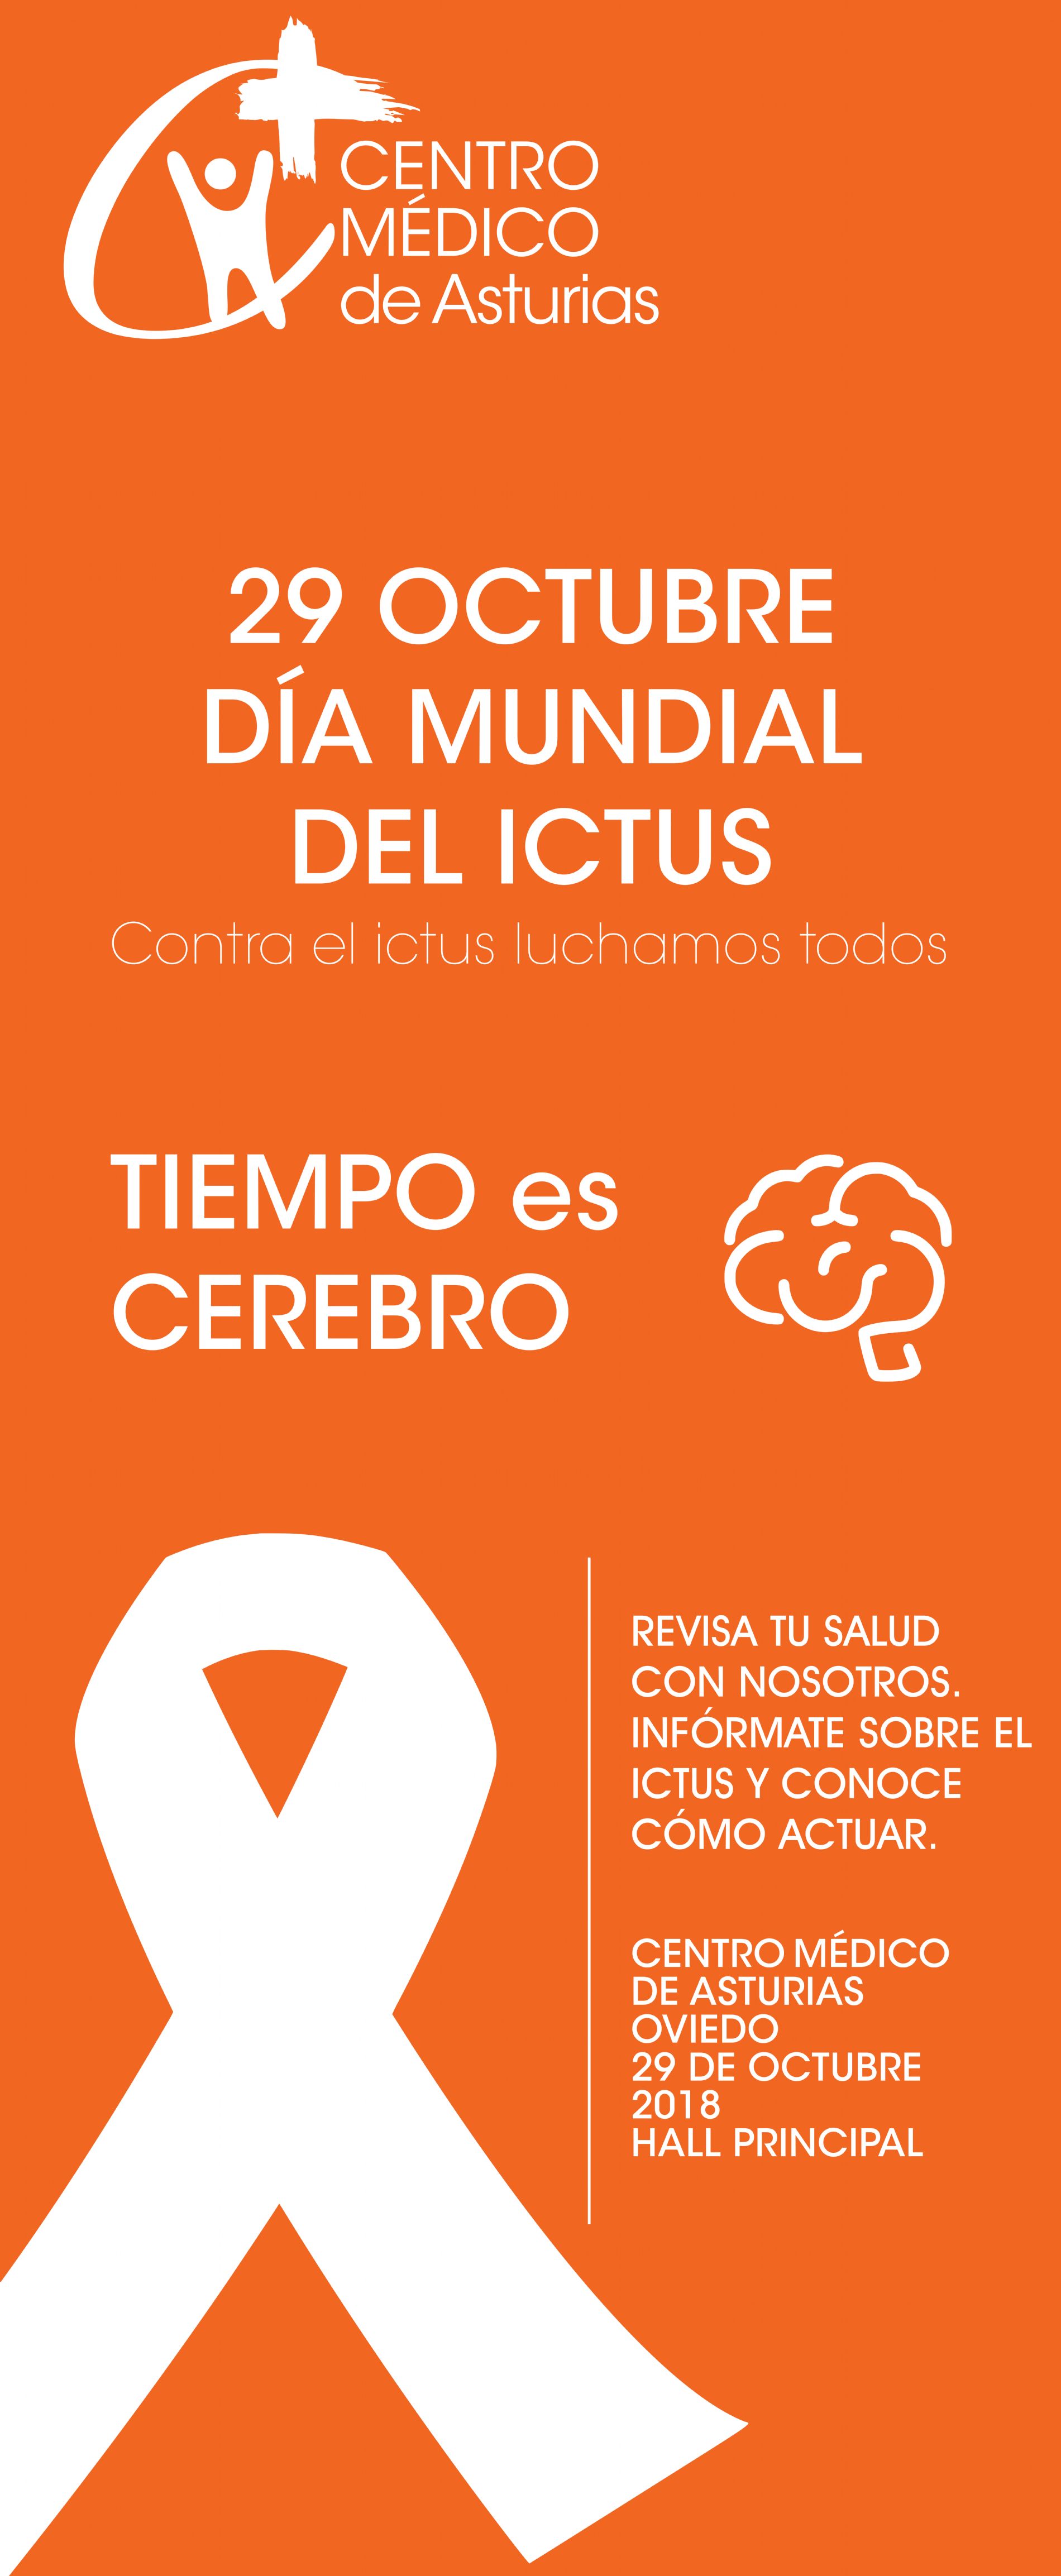 Jornada ICTUS en el Centro Médico. Revisa tu salud con nosotros porque tiempo es cerebro.